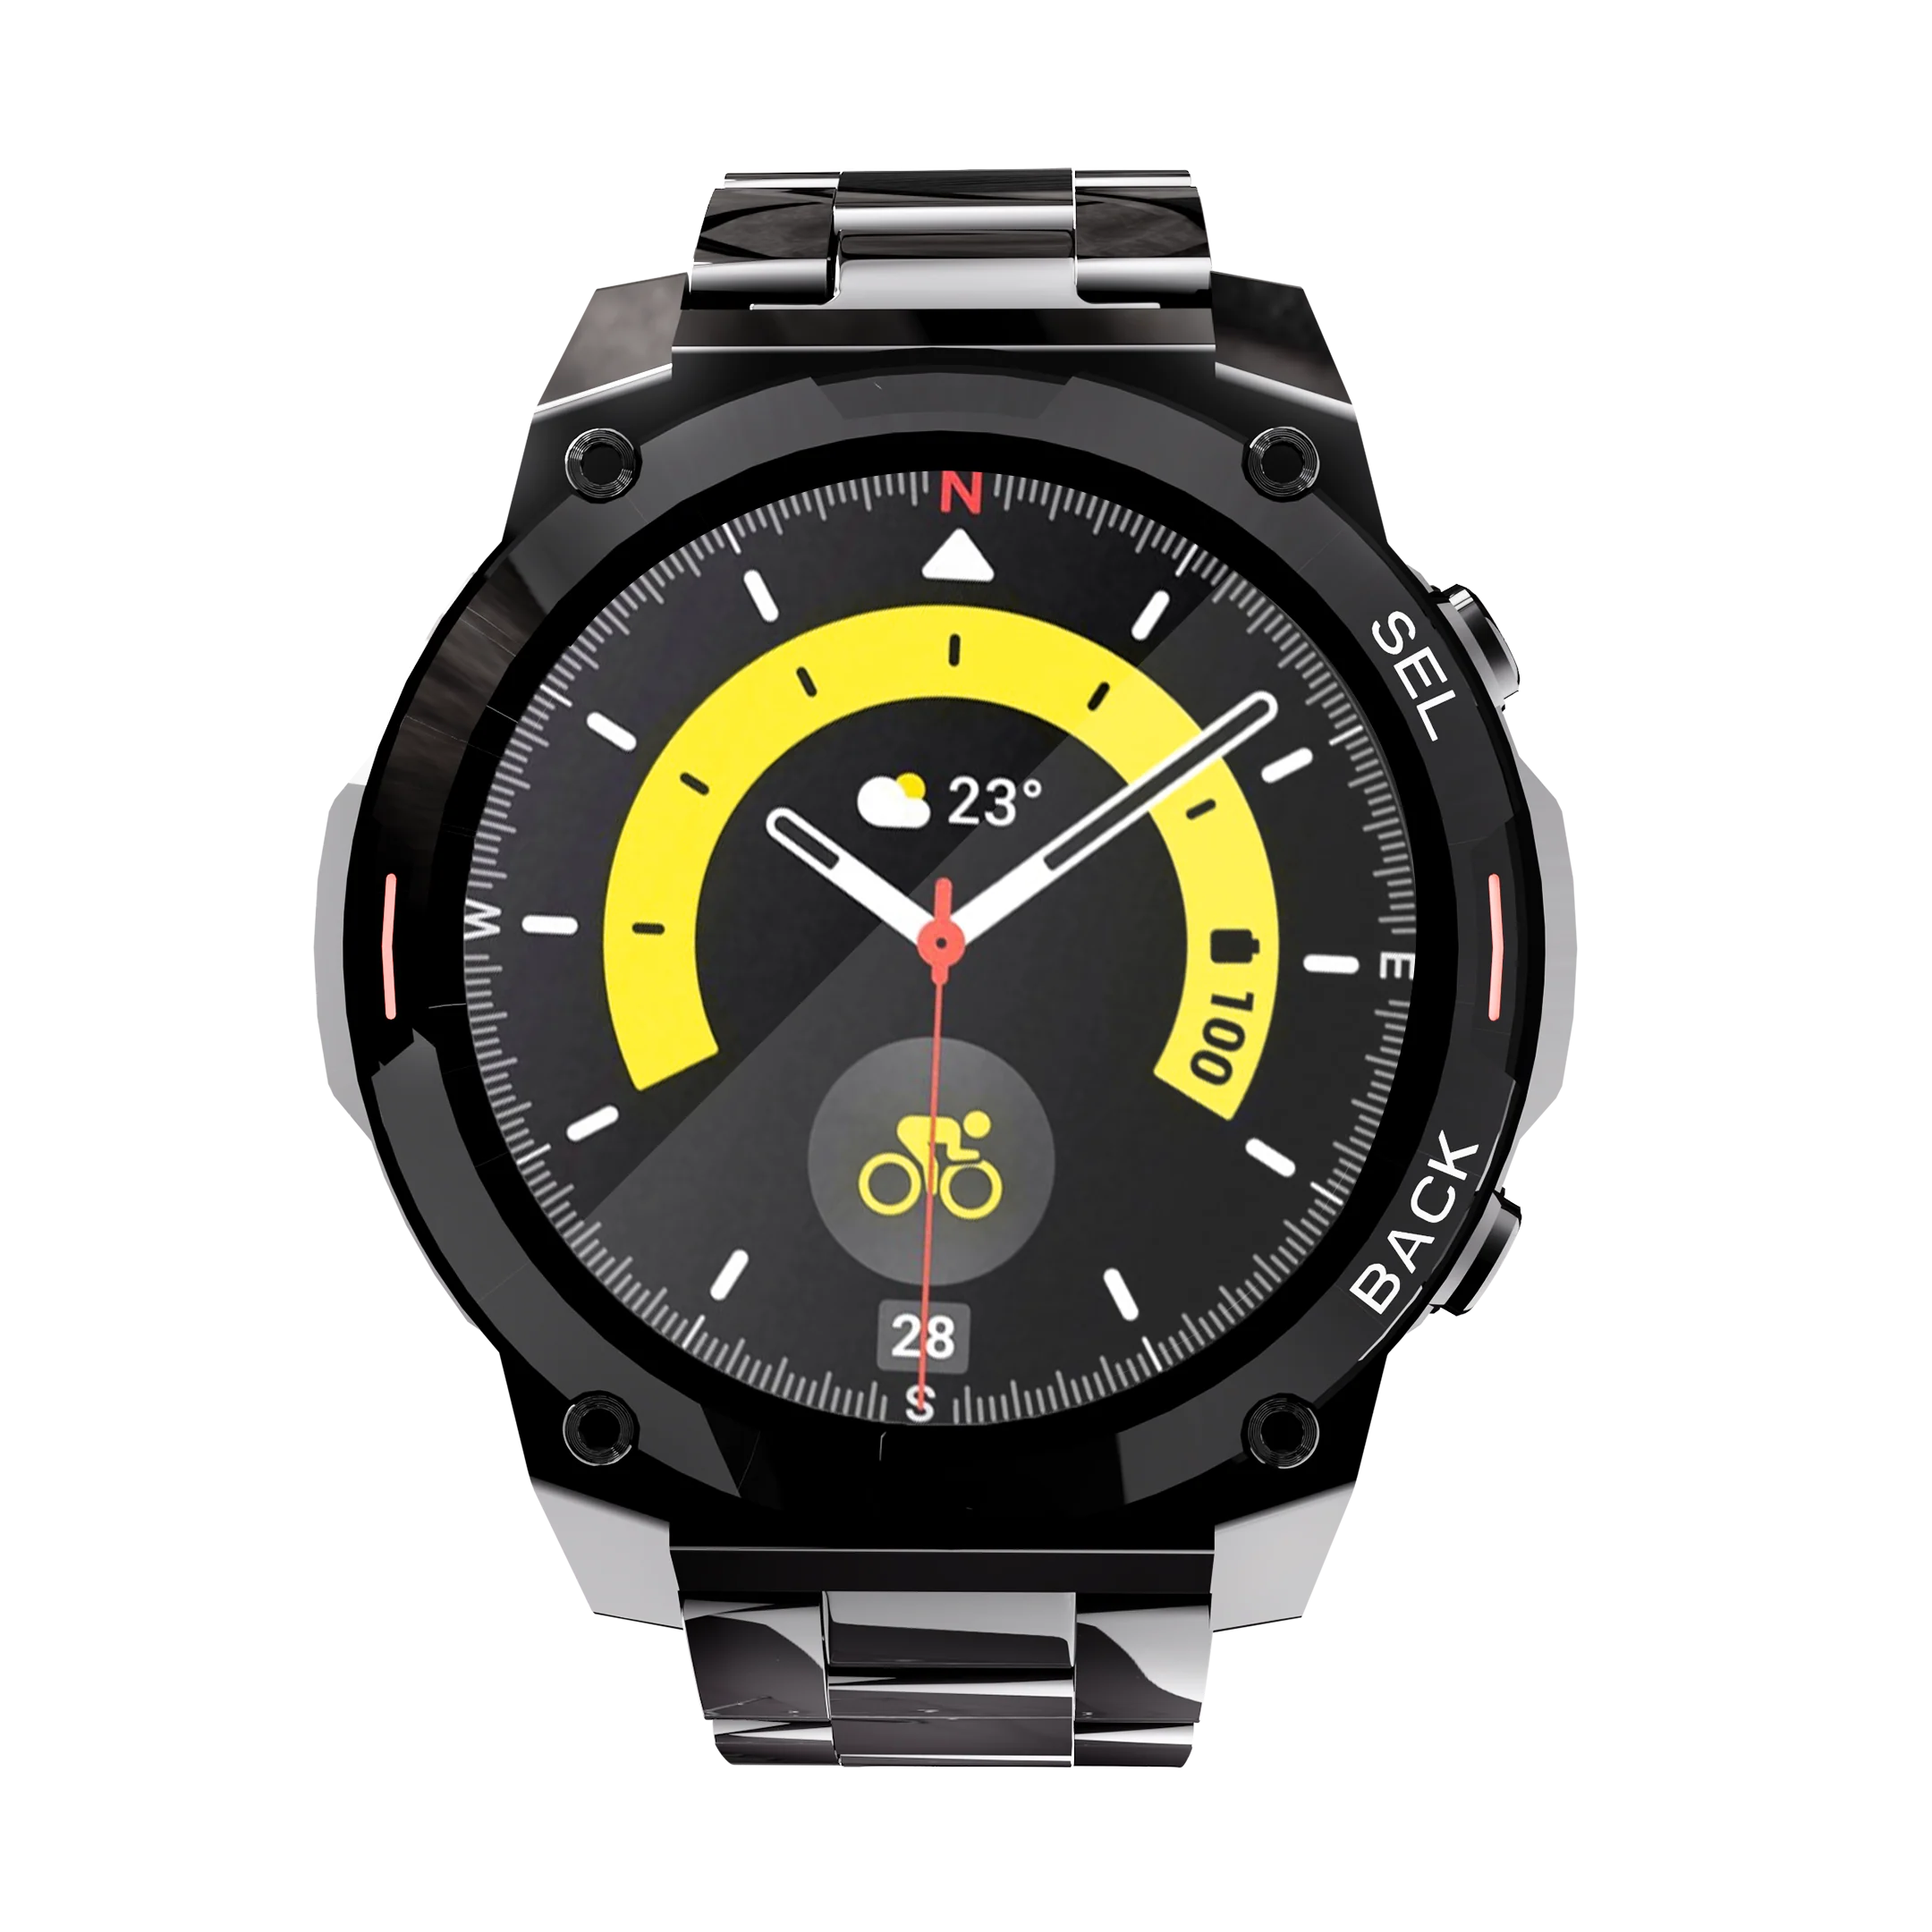 Ronin R-011 LUXE Smart Watch